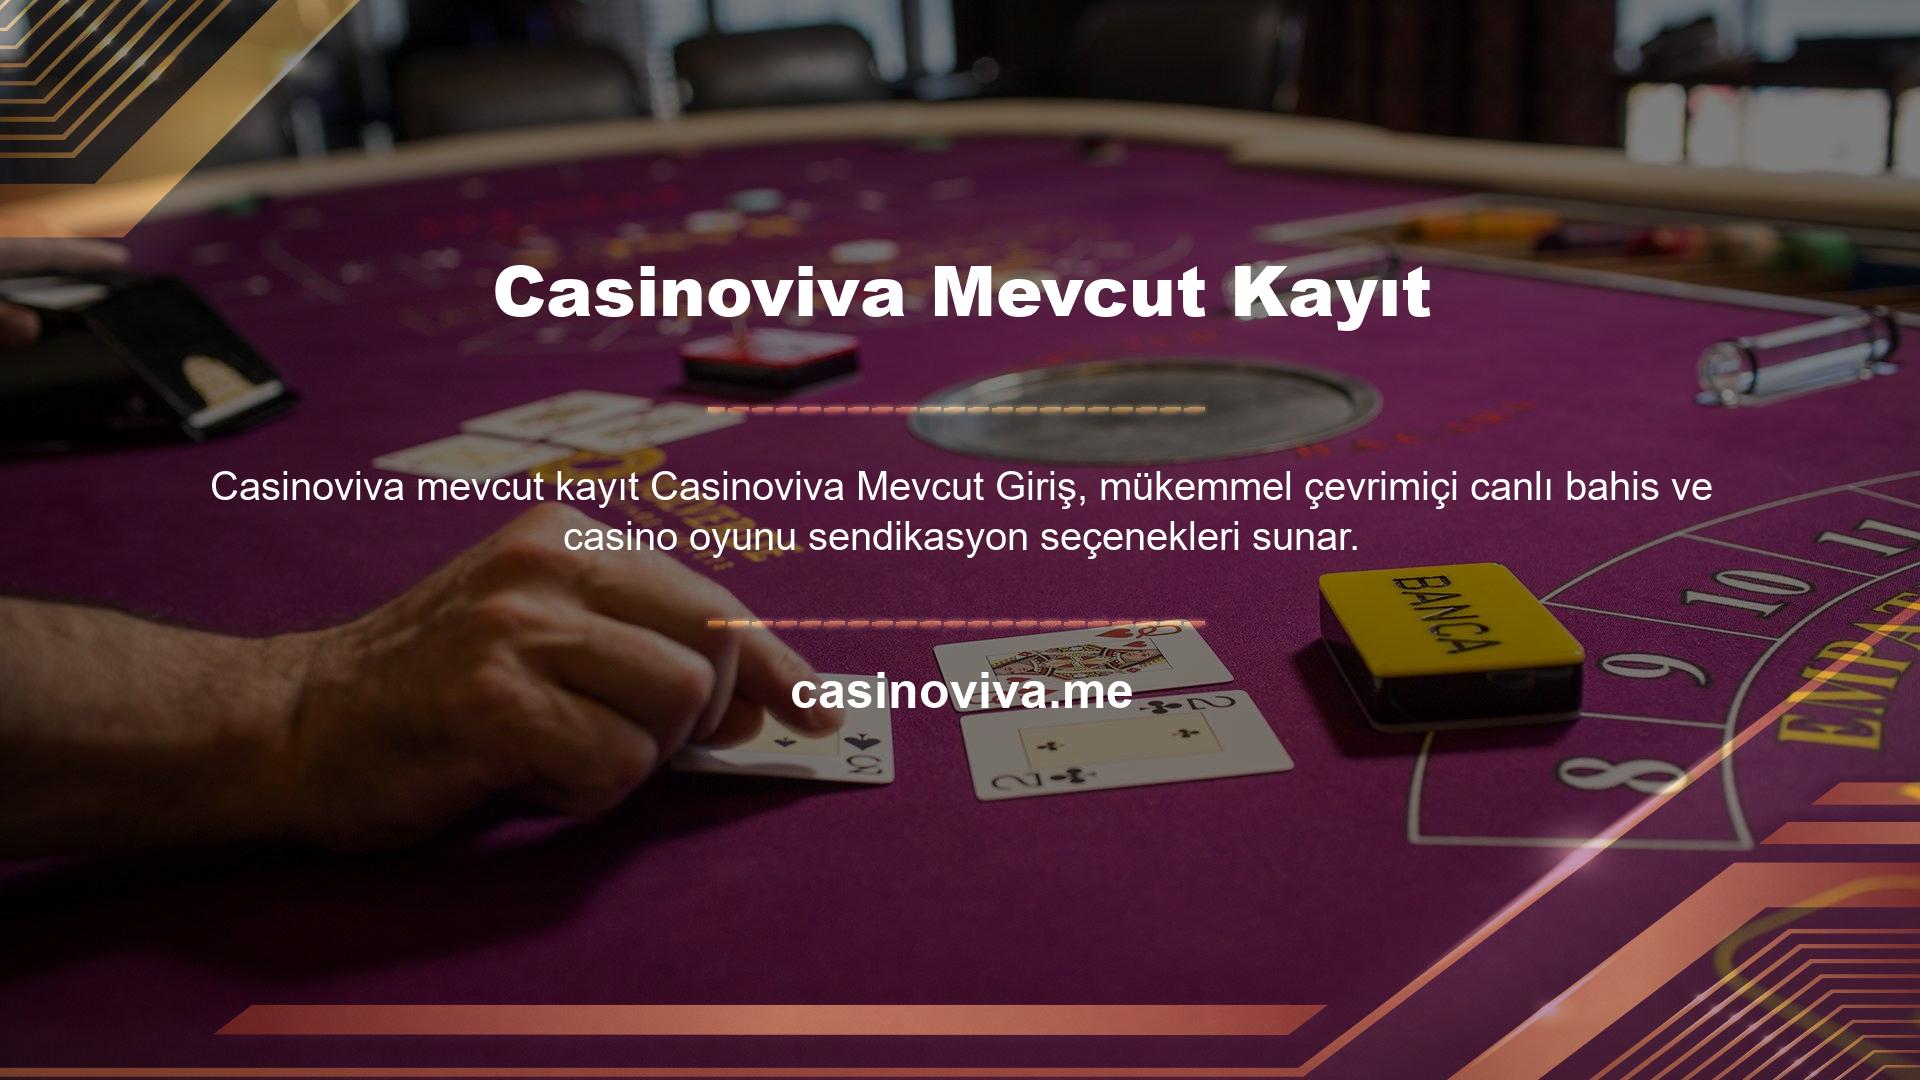 Casinoviva mevcut kayıt